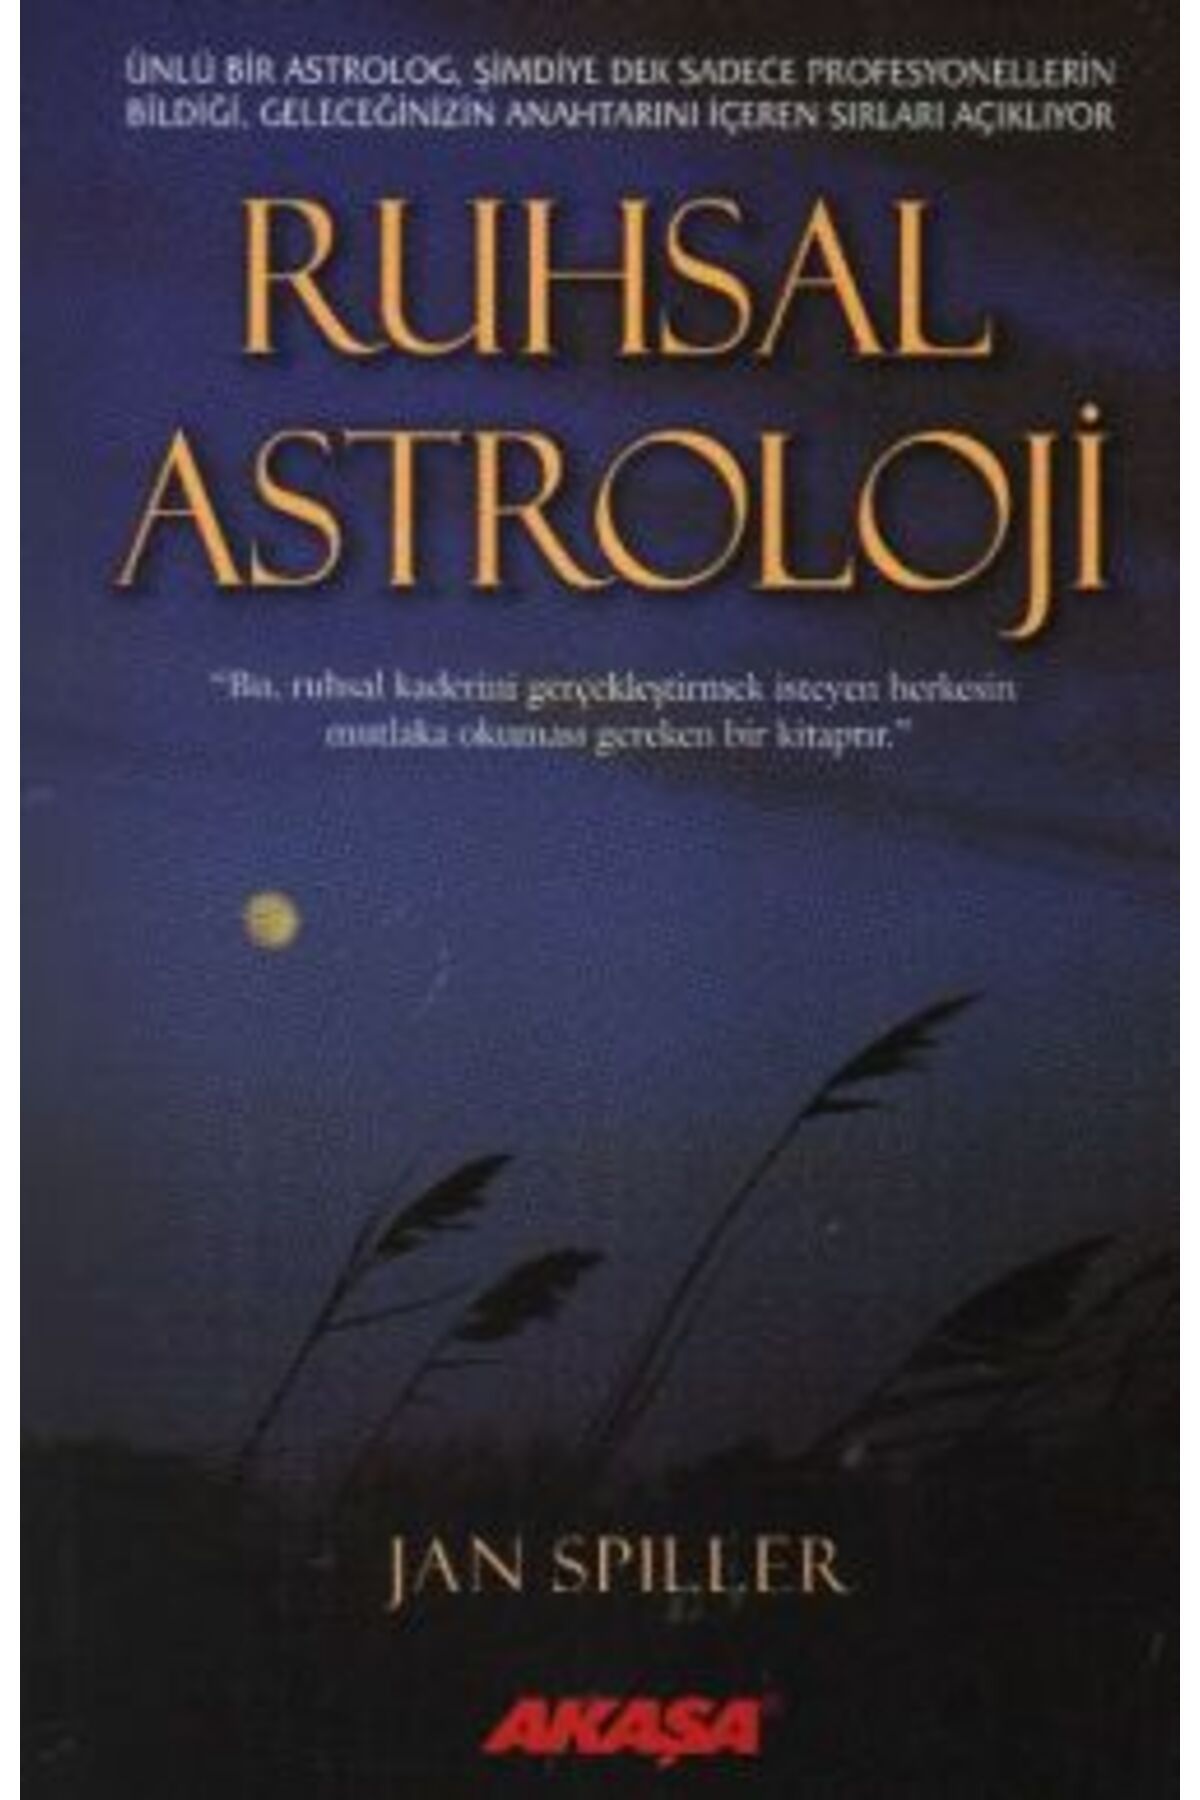 Akaşa Yayınları Ruhsal Astroloji kitabı - Jan Spiller - Akaşa Yayınları